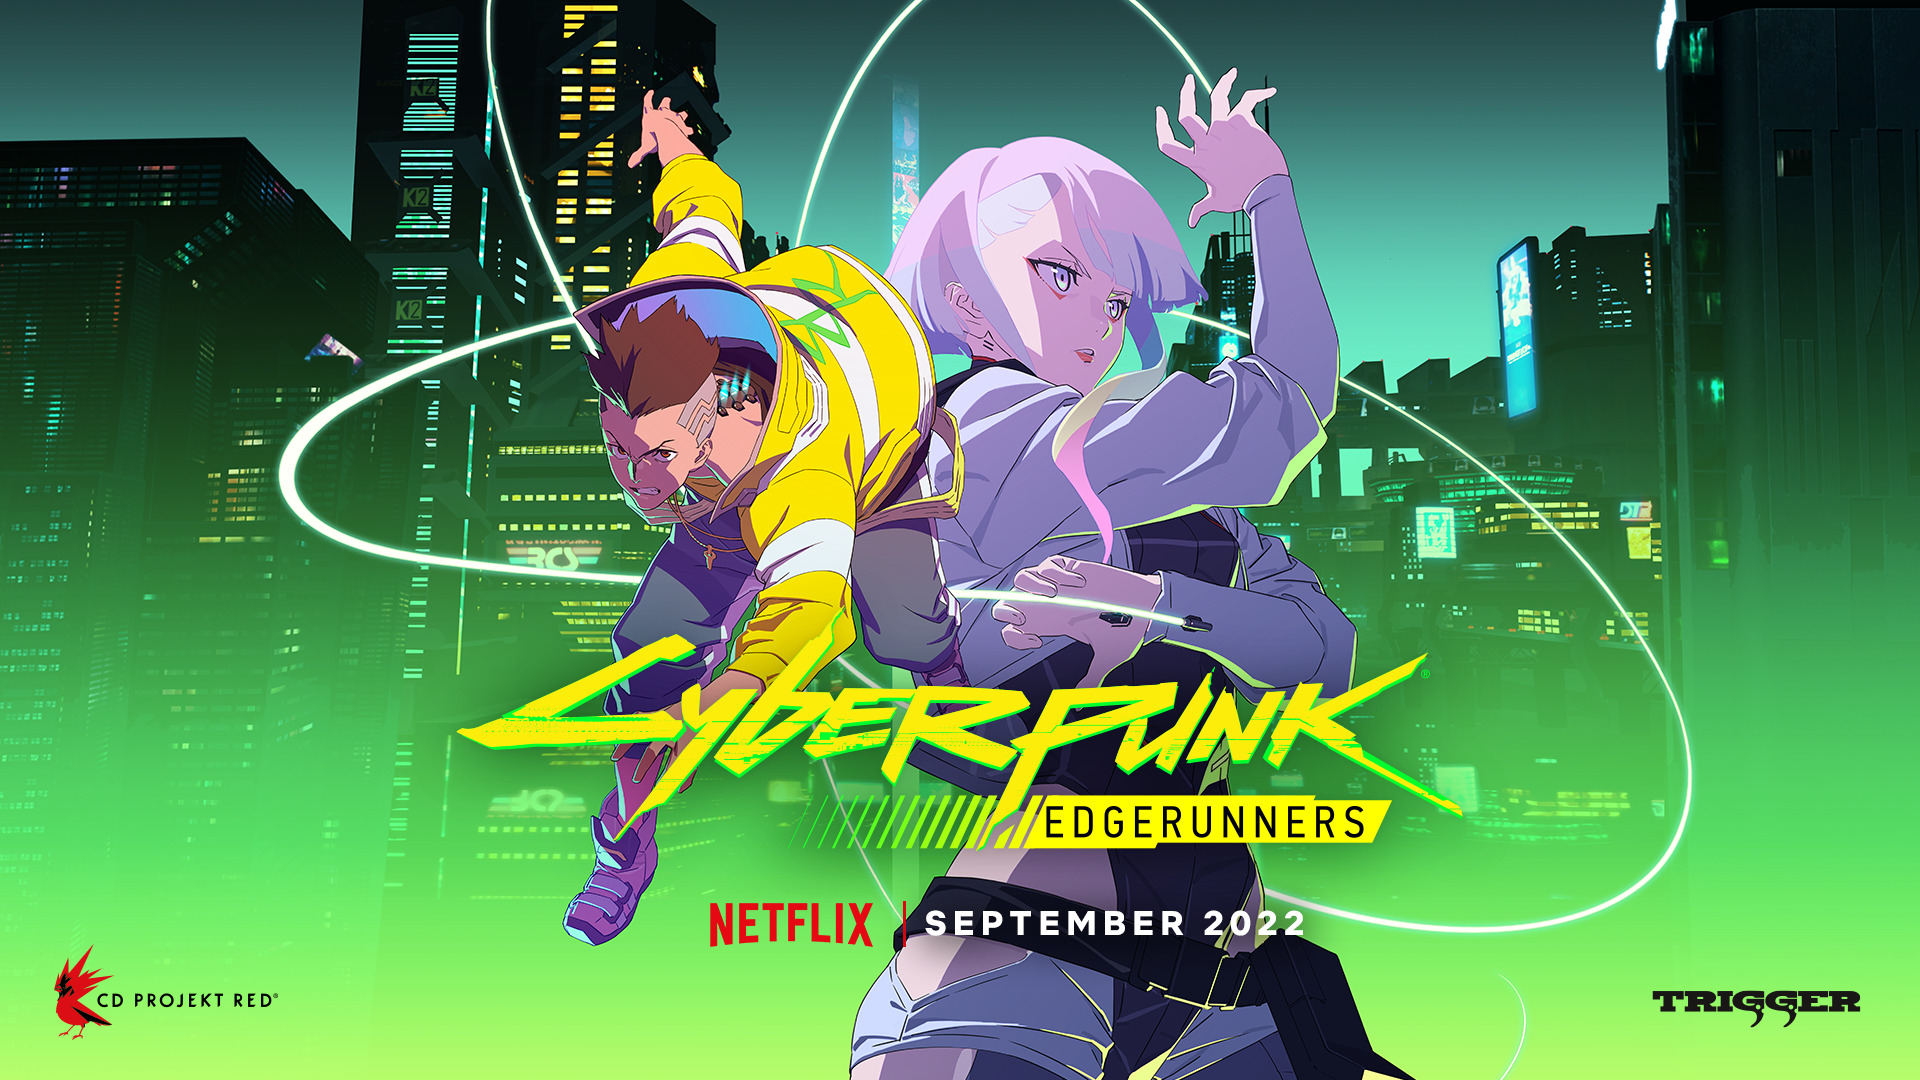 Cyberpunk: Edgerunners premieres September 13